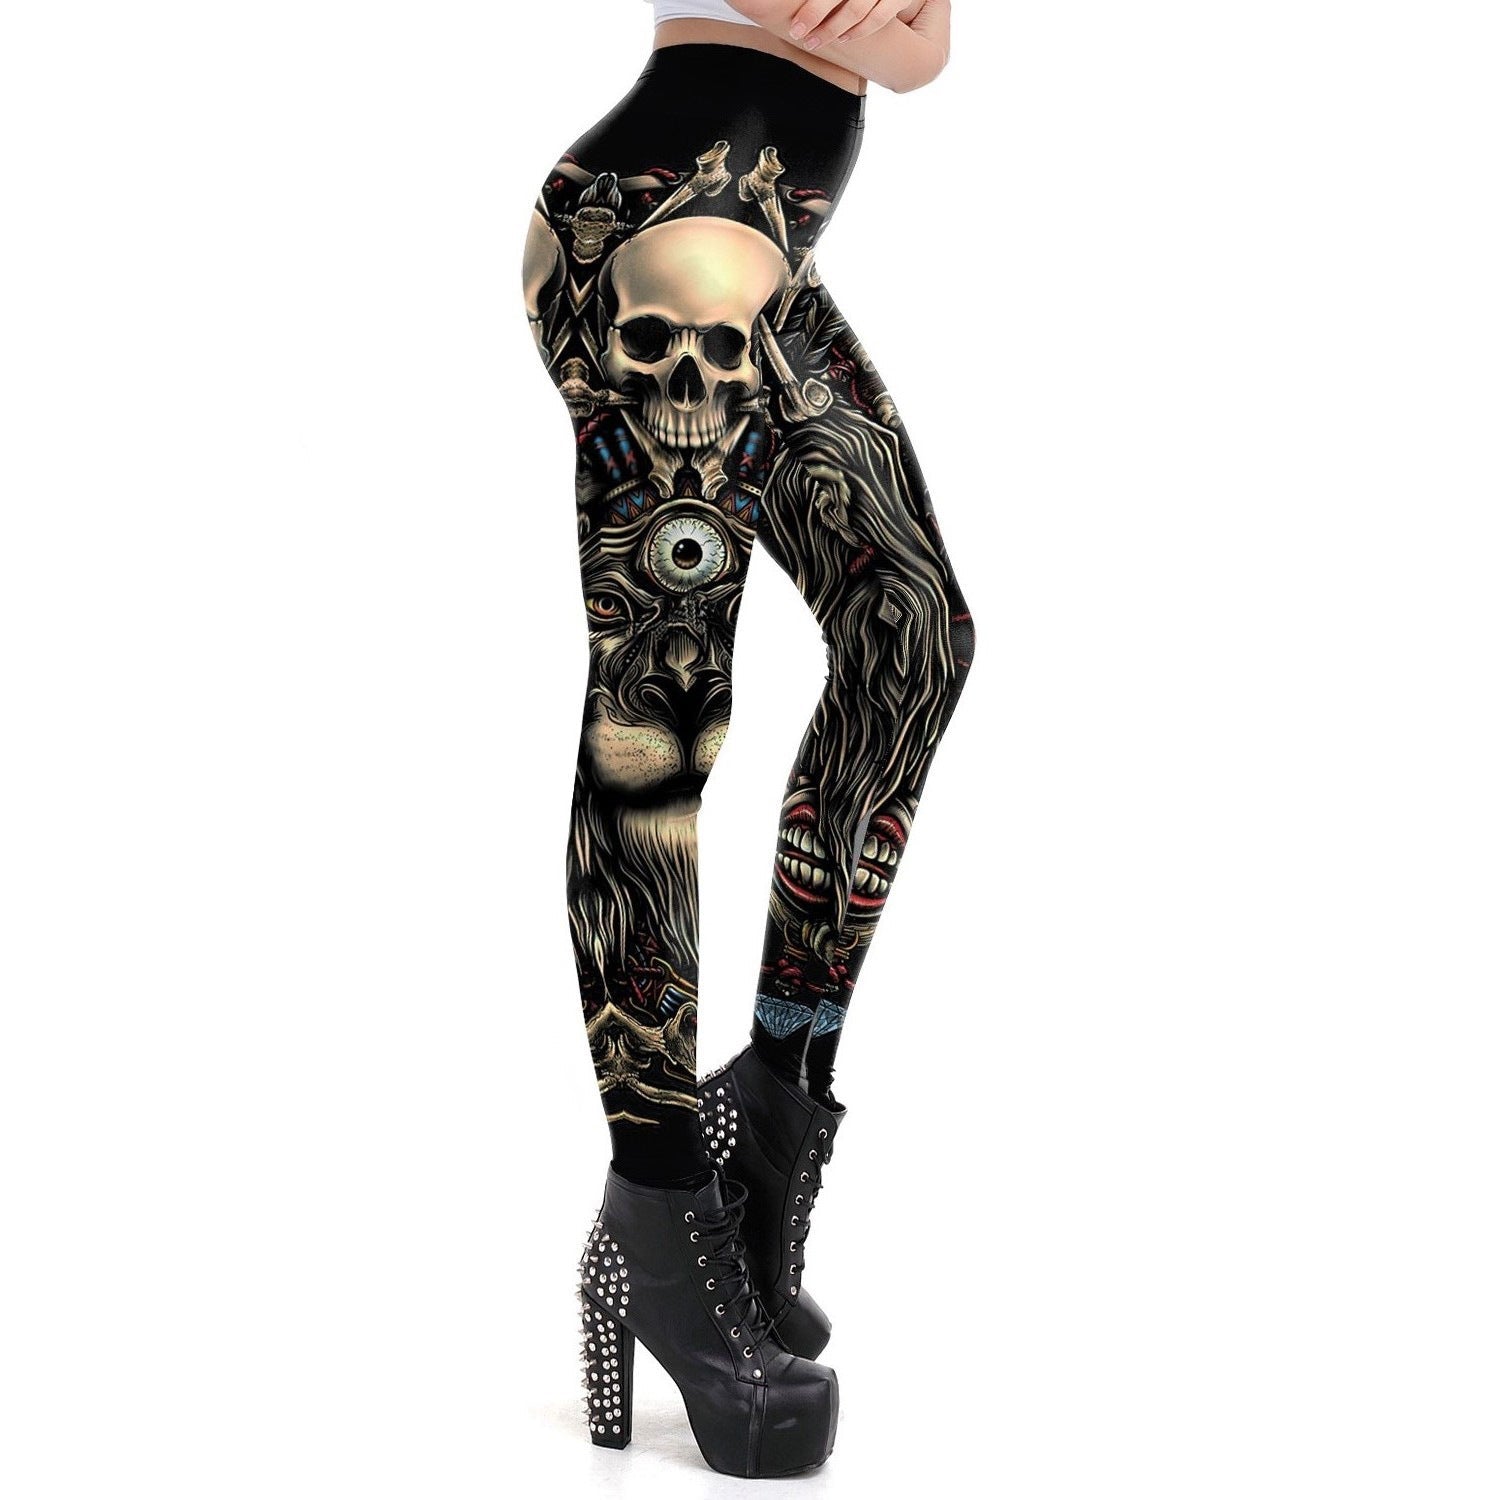 3D Human Skeleton Halloween Leggings for Women-Pants-KDK1966-S-Free Shipping at meselling99